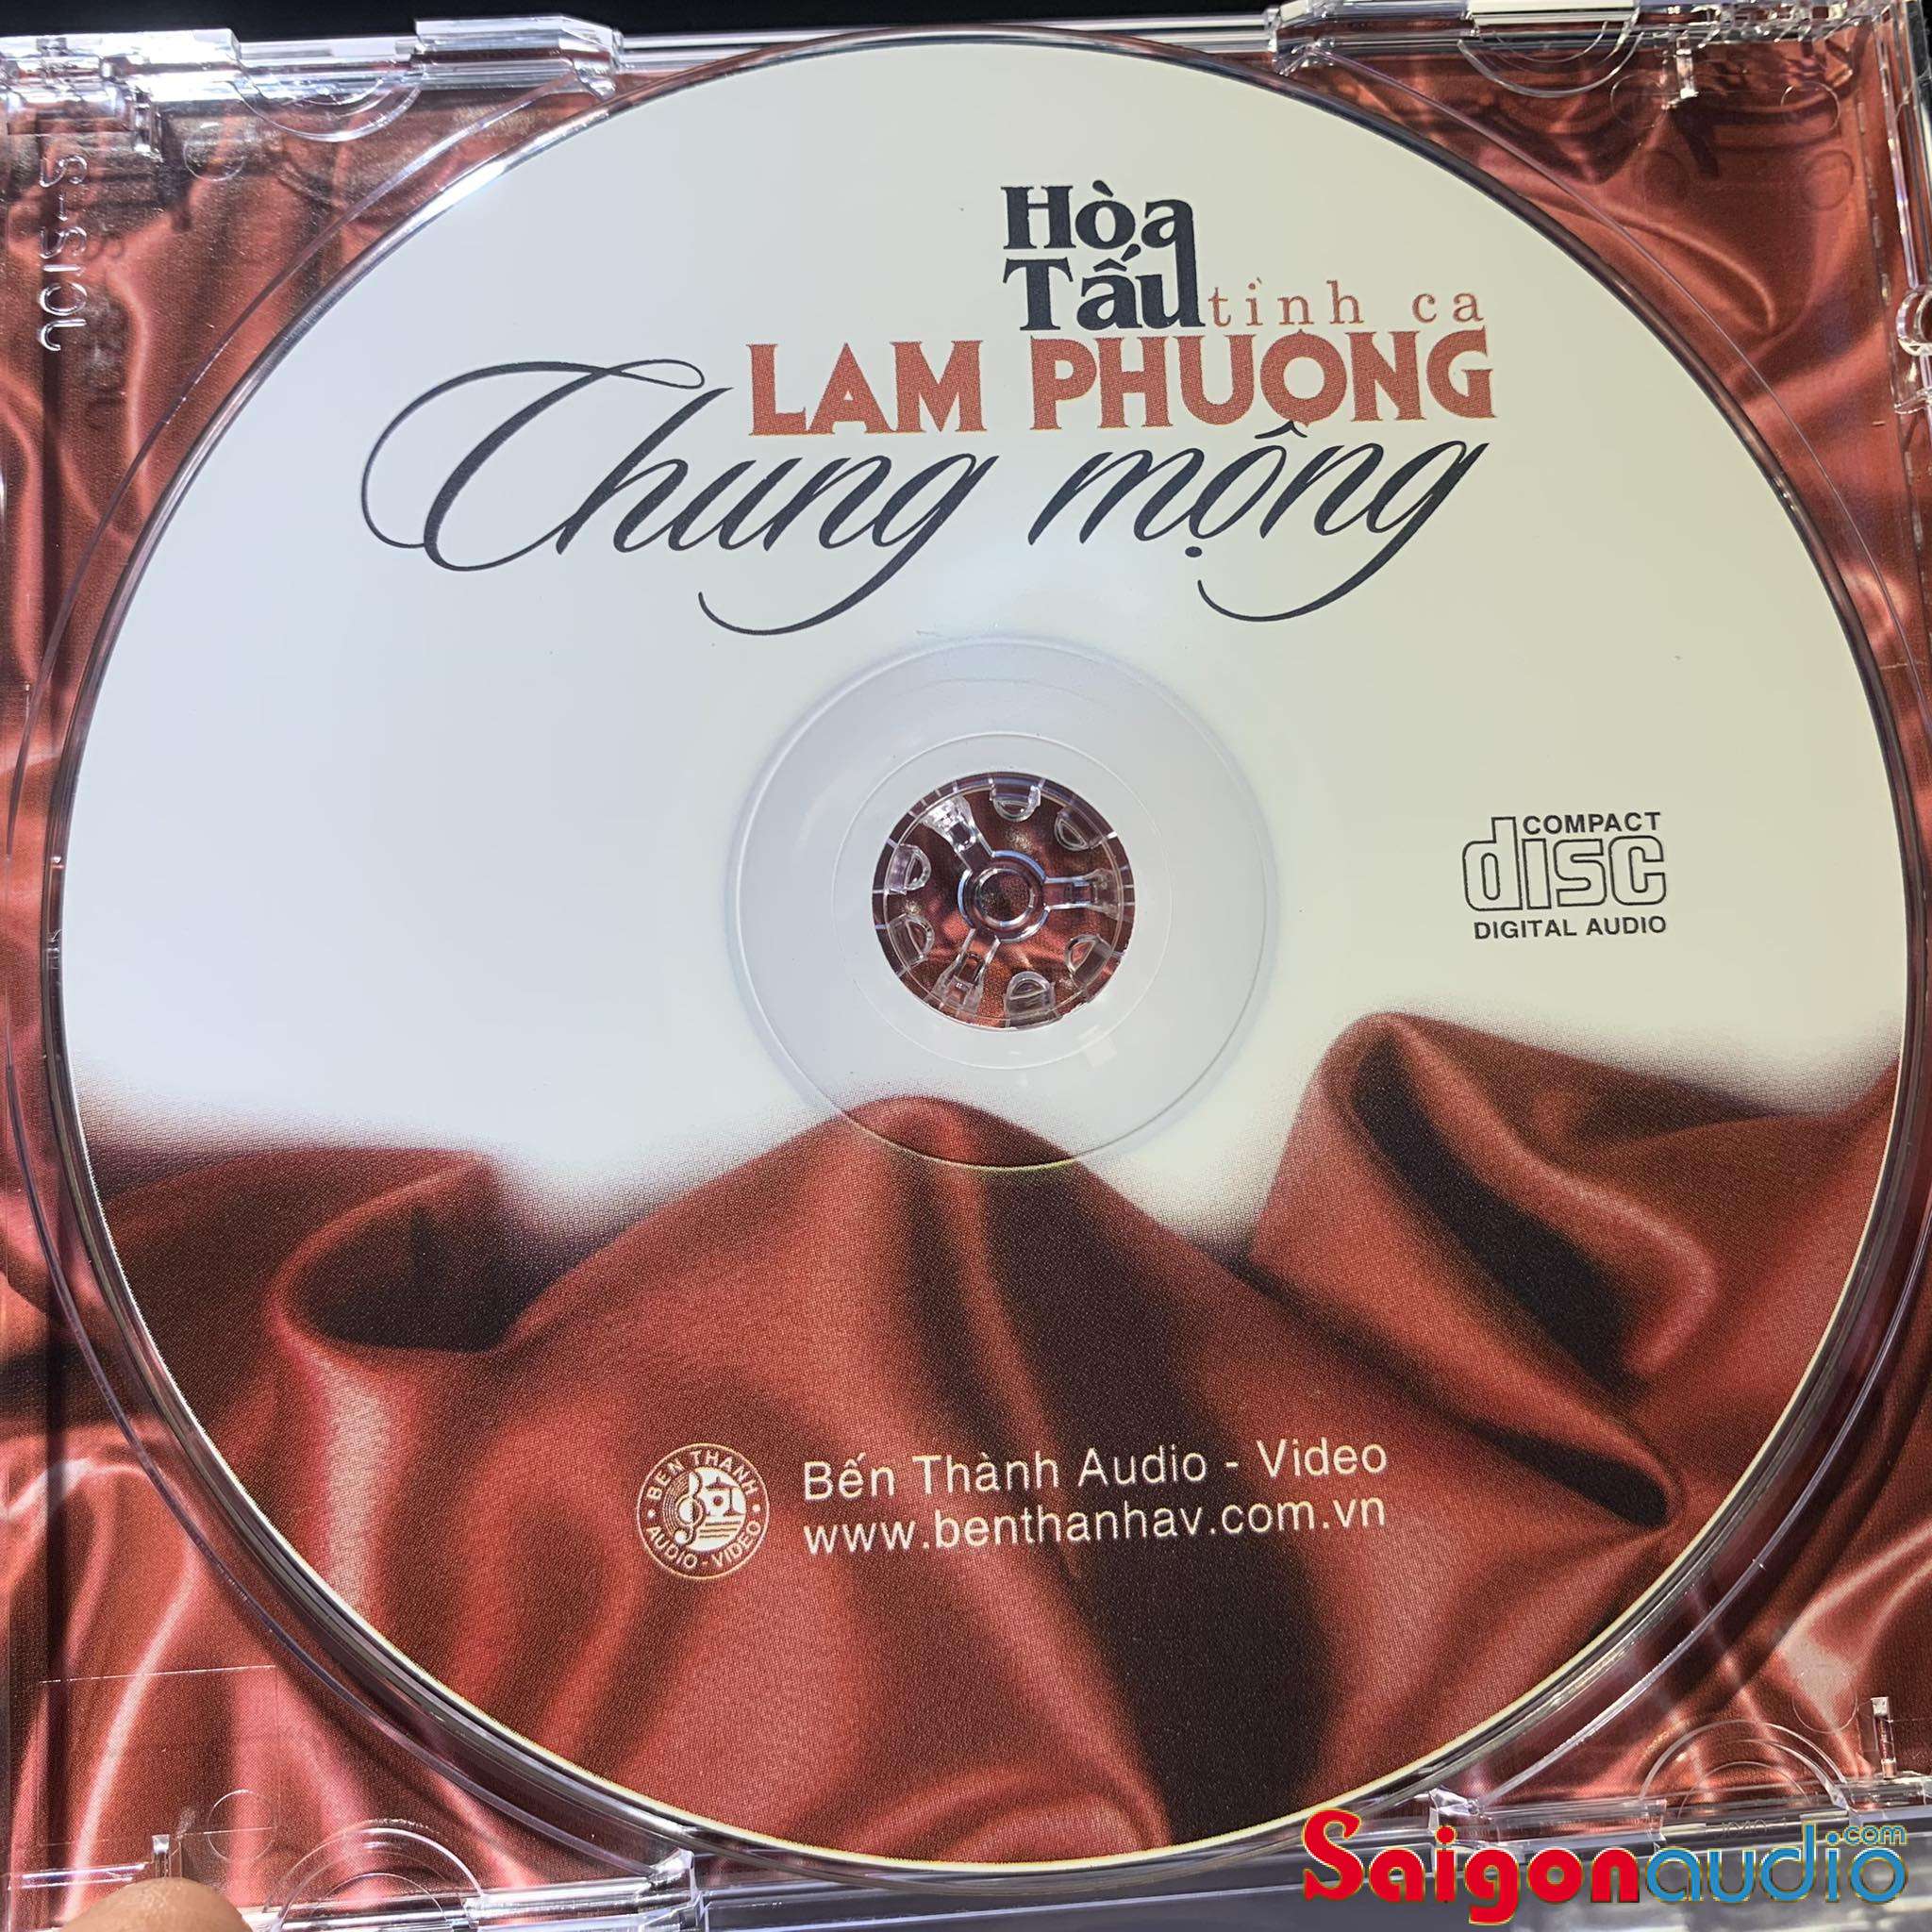 Đĩa CD gốc Hòa Tấu Tình Ca Lam Phương - Chung Mộng (Free ship khi mua 2 đĩa CD cùng hoặc khác loại)